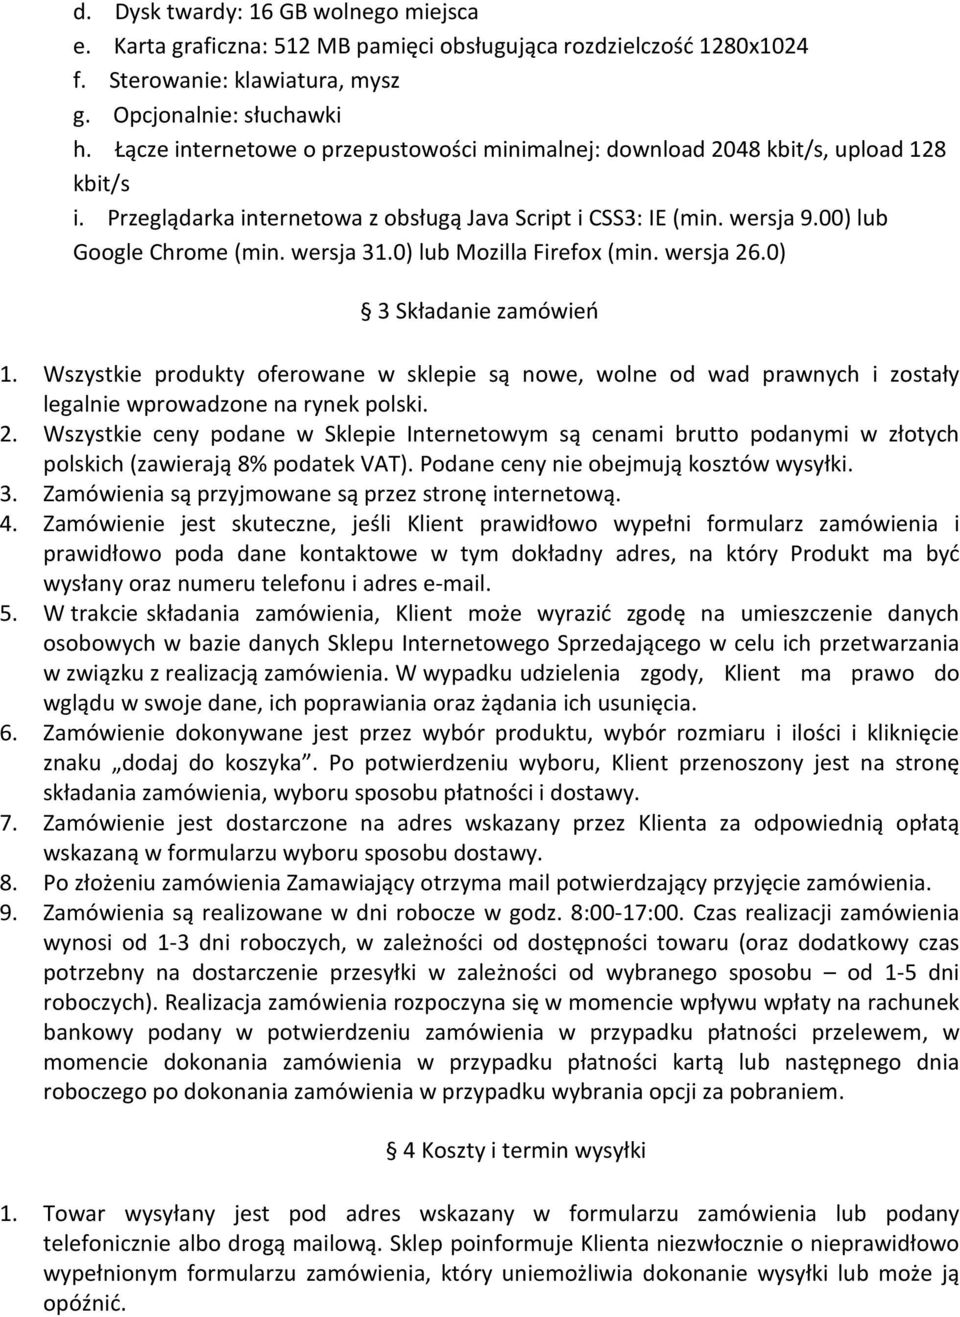 wersja 31.0) lub Mozilla Firefox (min. wersja 26.0) 3 Składanie zamówień 1. Wszystkie produkty oferowane w sklepie są nowe, wolne od wad prawnych i zostały legalnie wprowadzone na rynek polski. 2. Wszystkie ceny podane w Sklepie Internetowym są cenami brutto podanymi w złotych polskich (zawierają 8% podatek VAT).